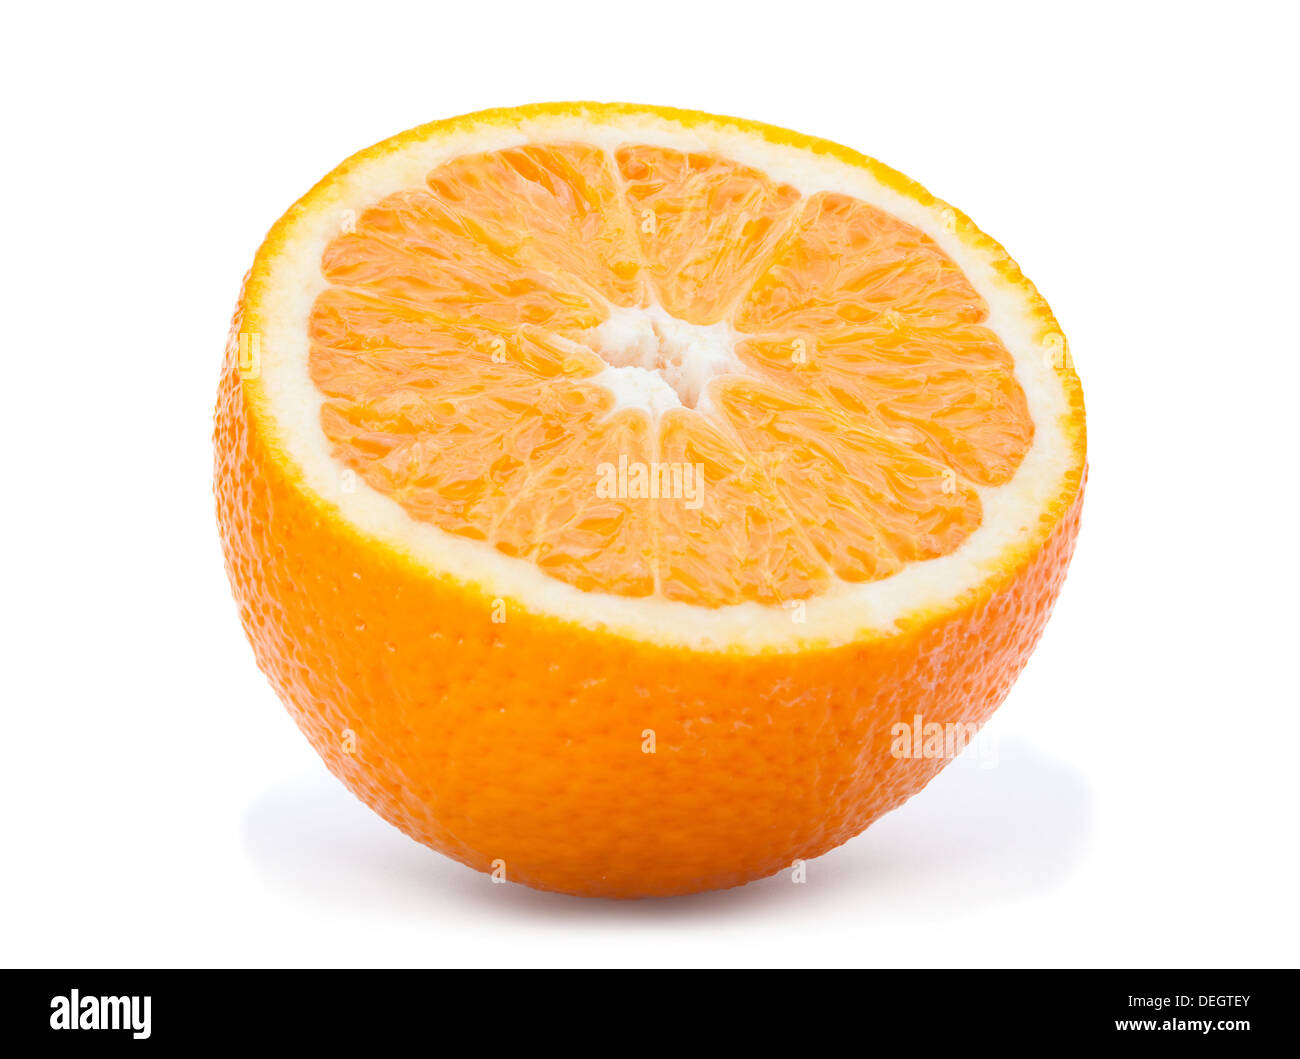 Orange citrus fruit isolated on white Stock Photo